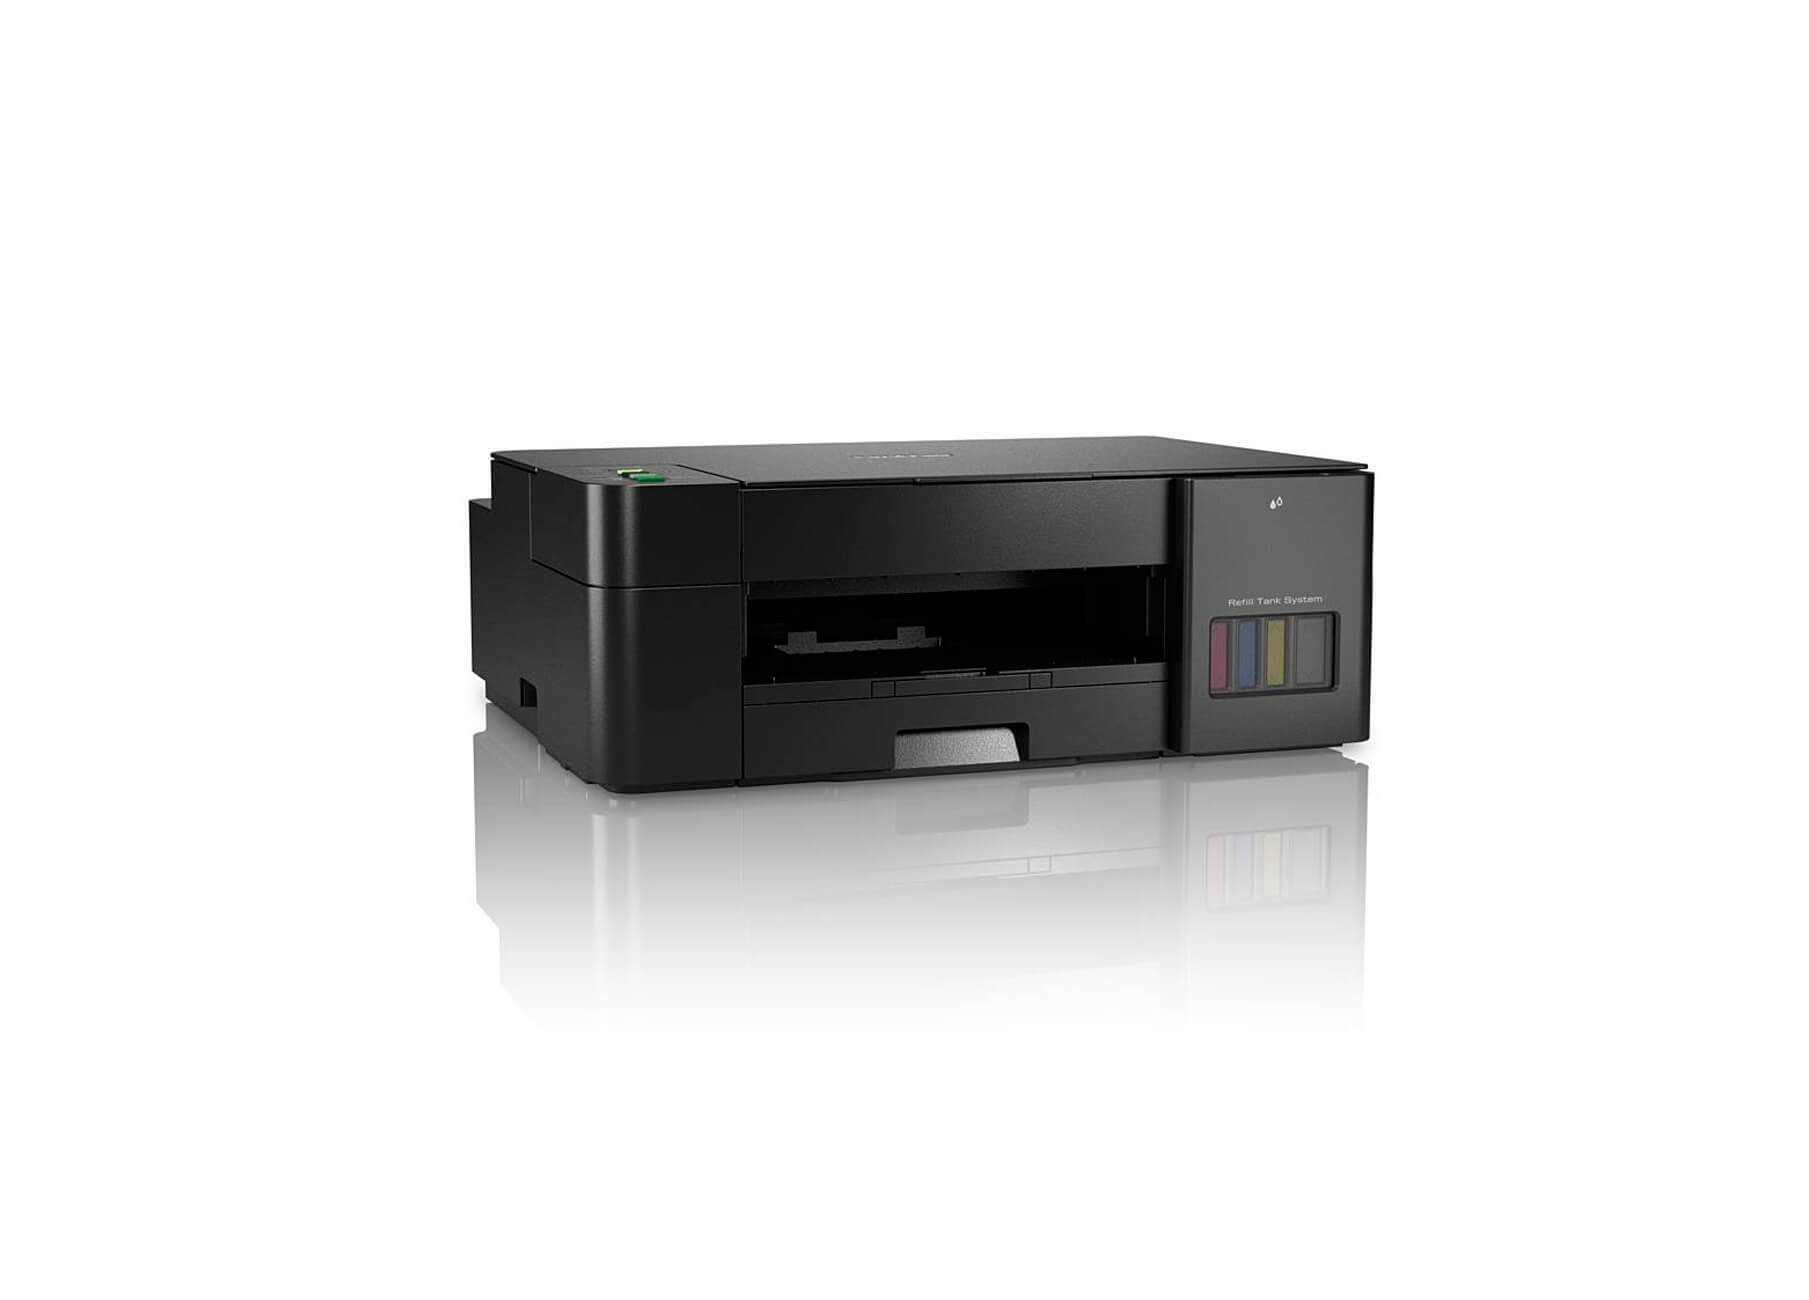 Impresora Multifunción Brother DCP-T420W